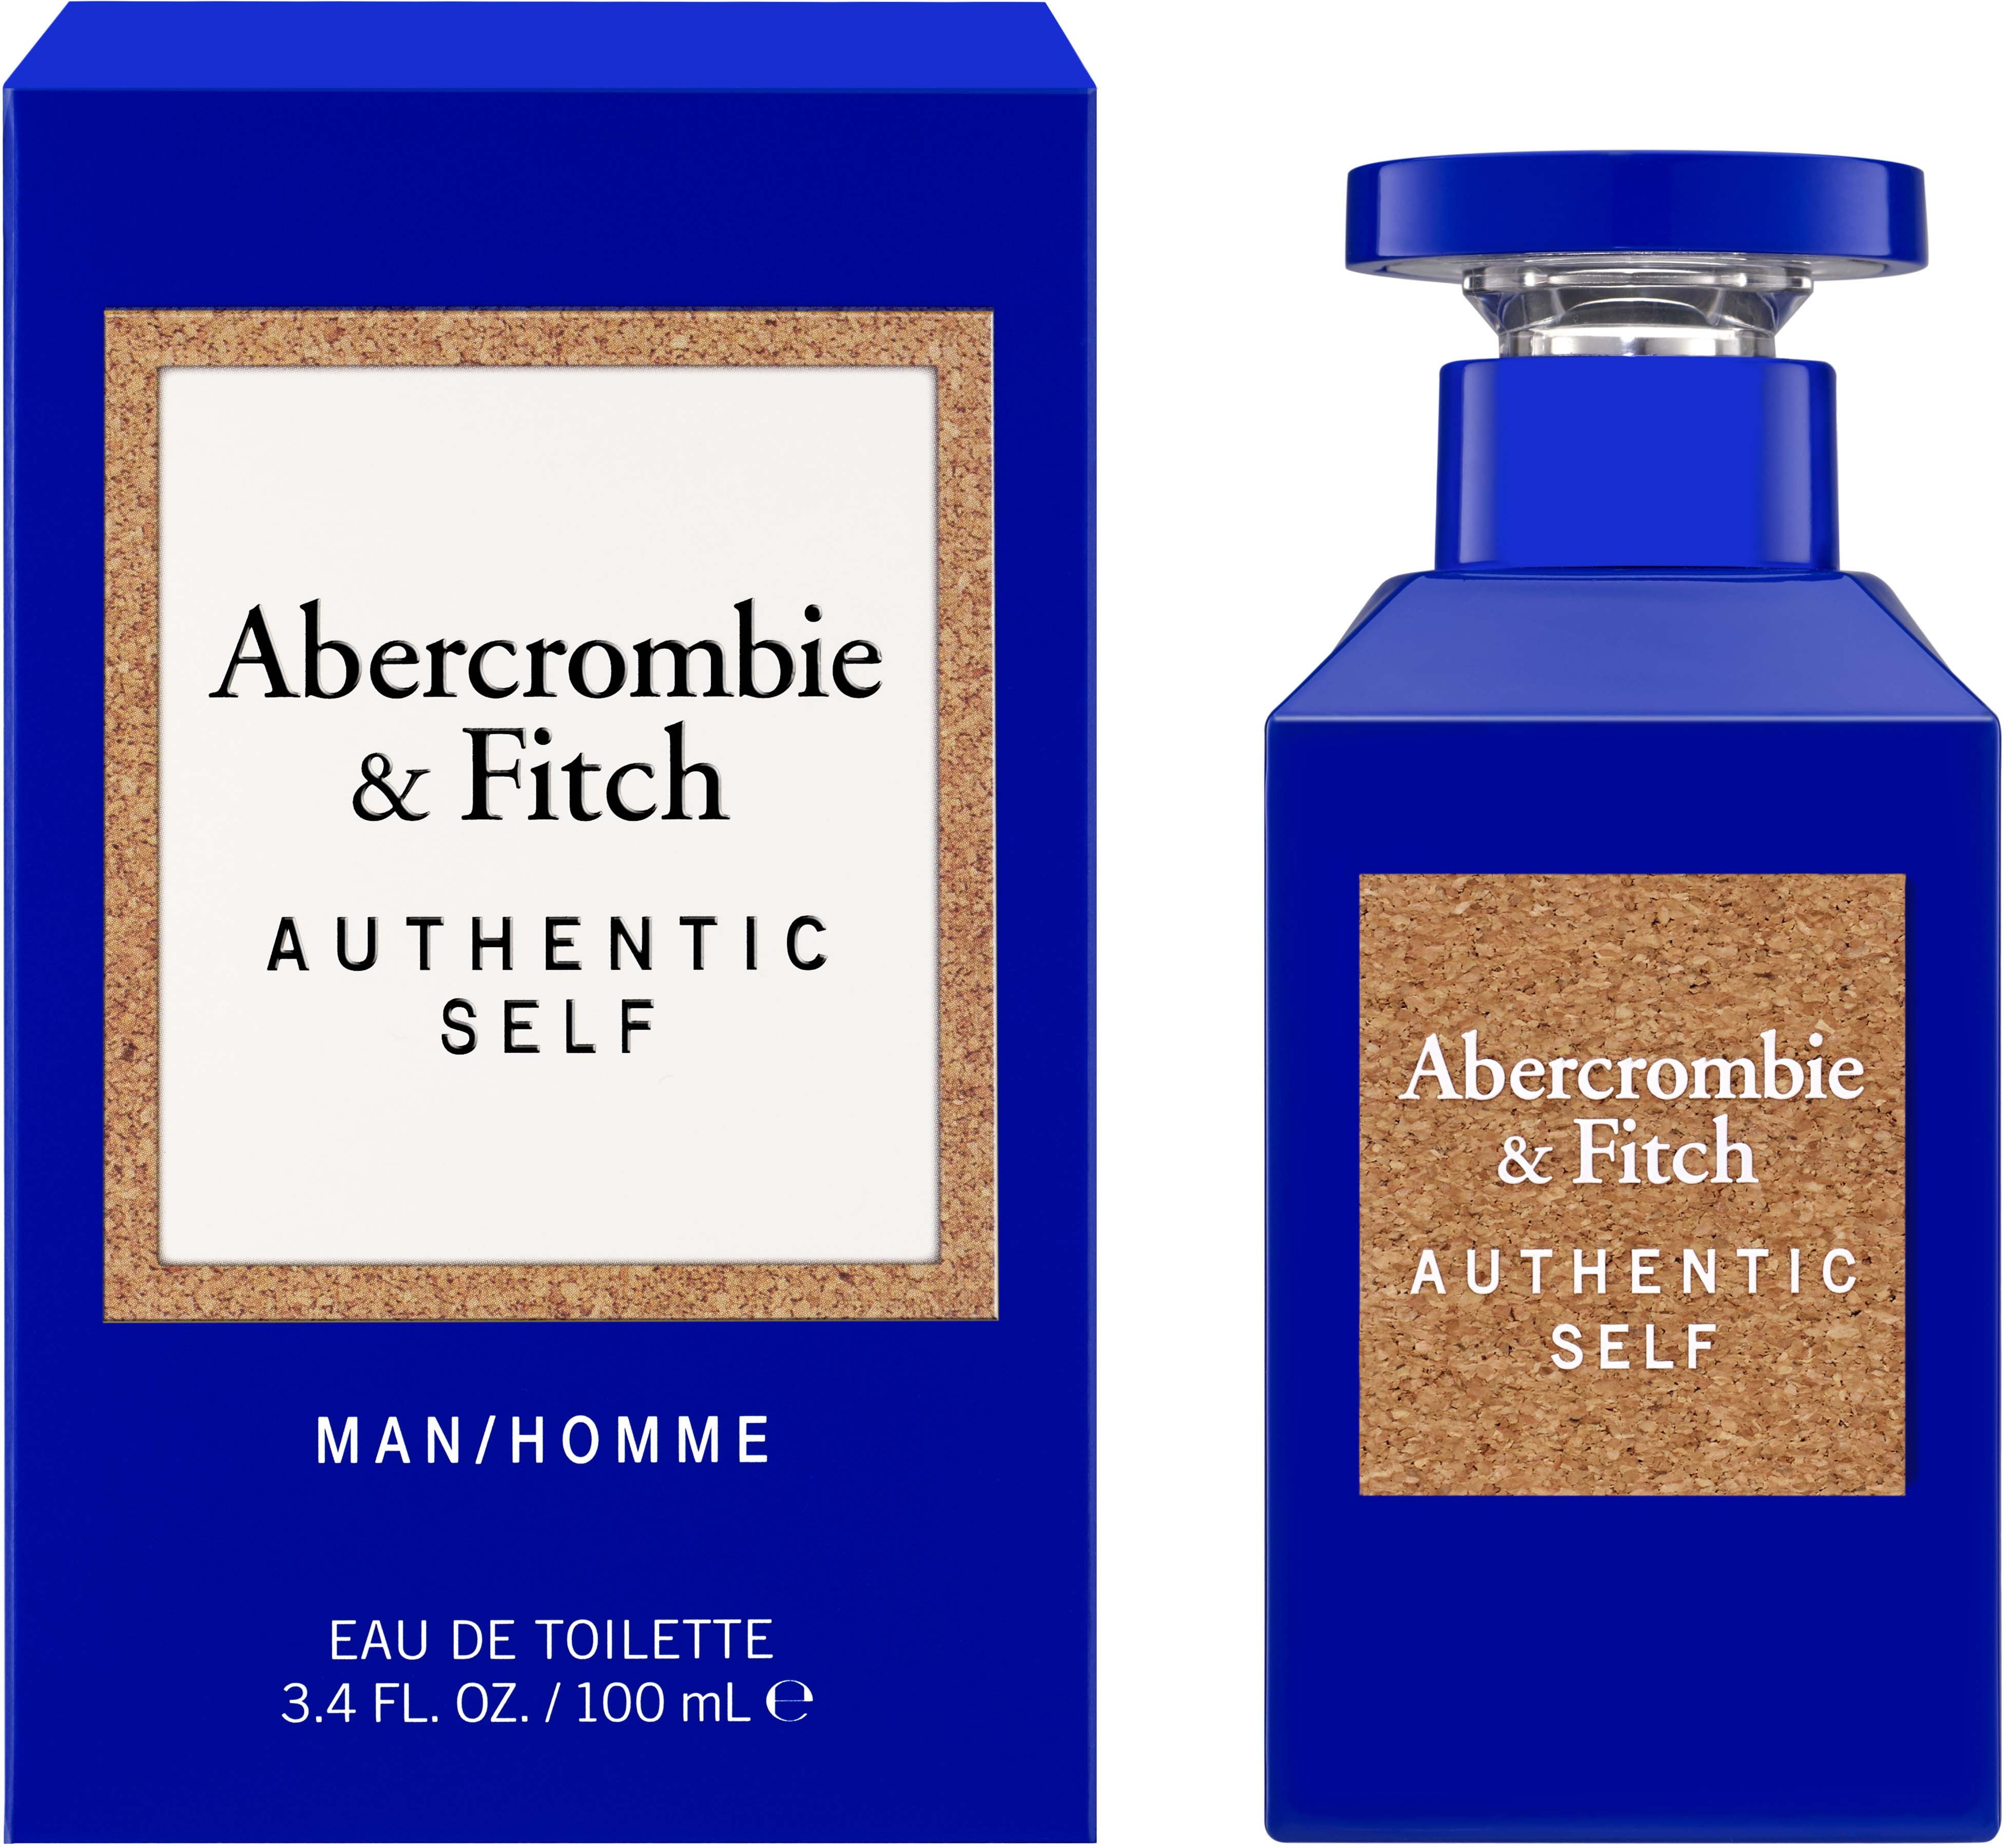 Abercrombie & Fitch Authentic Self Men Eau de Toilette 100 ml